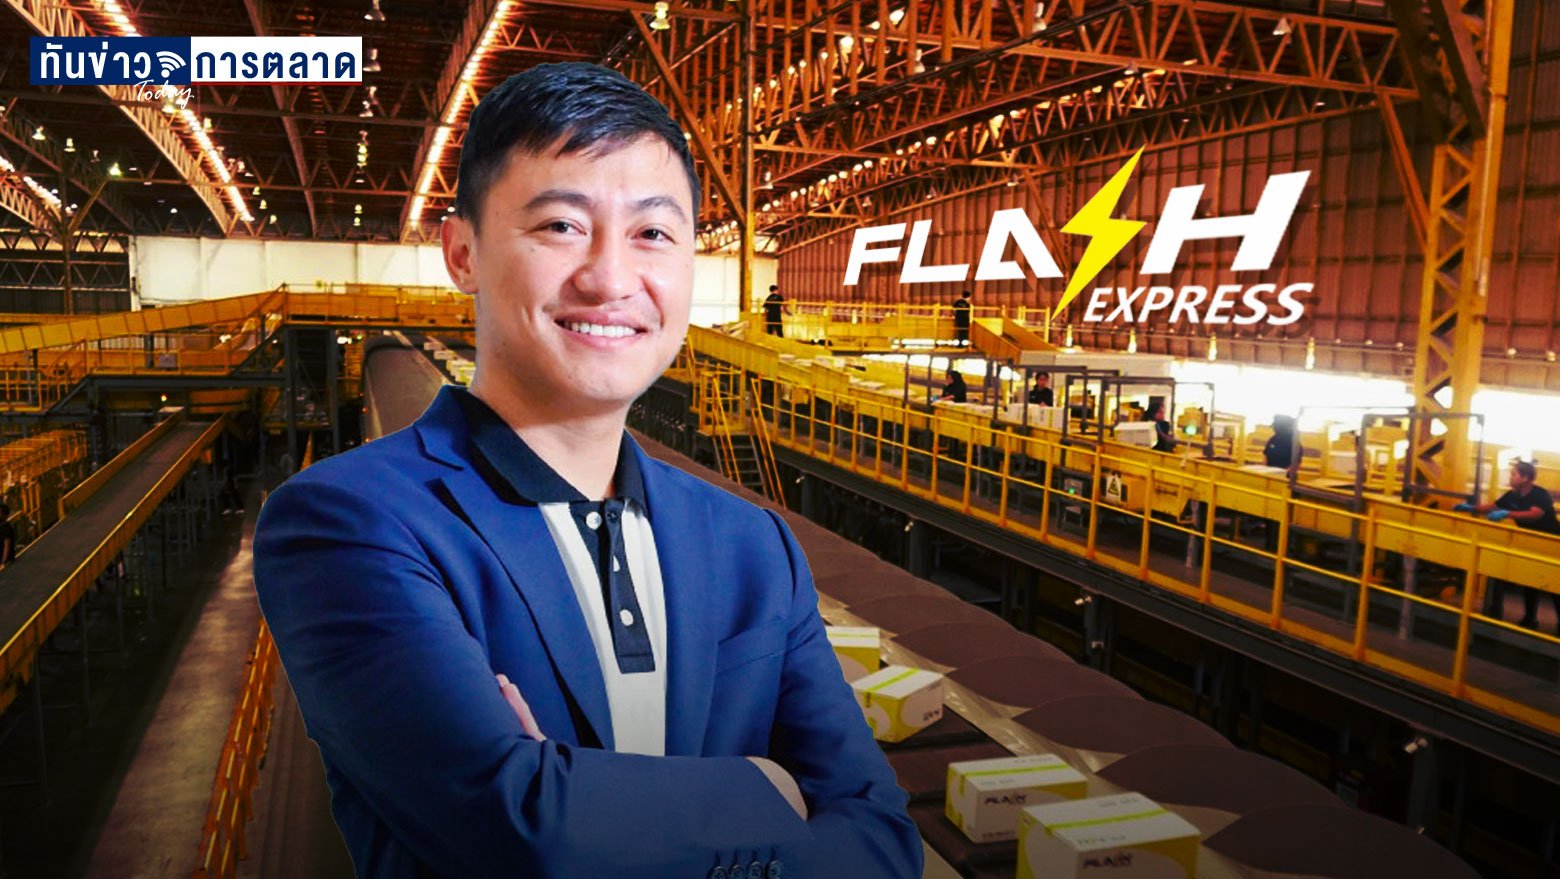 เปิดความสำเร็จยูนิคอร์นบริษัทแรกของไทย "FLASH EXPRESS"  ปี 65 เตรียมบุกตลาดอาเซียน